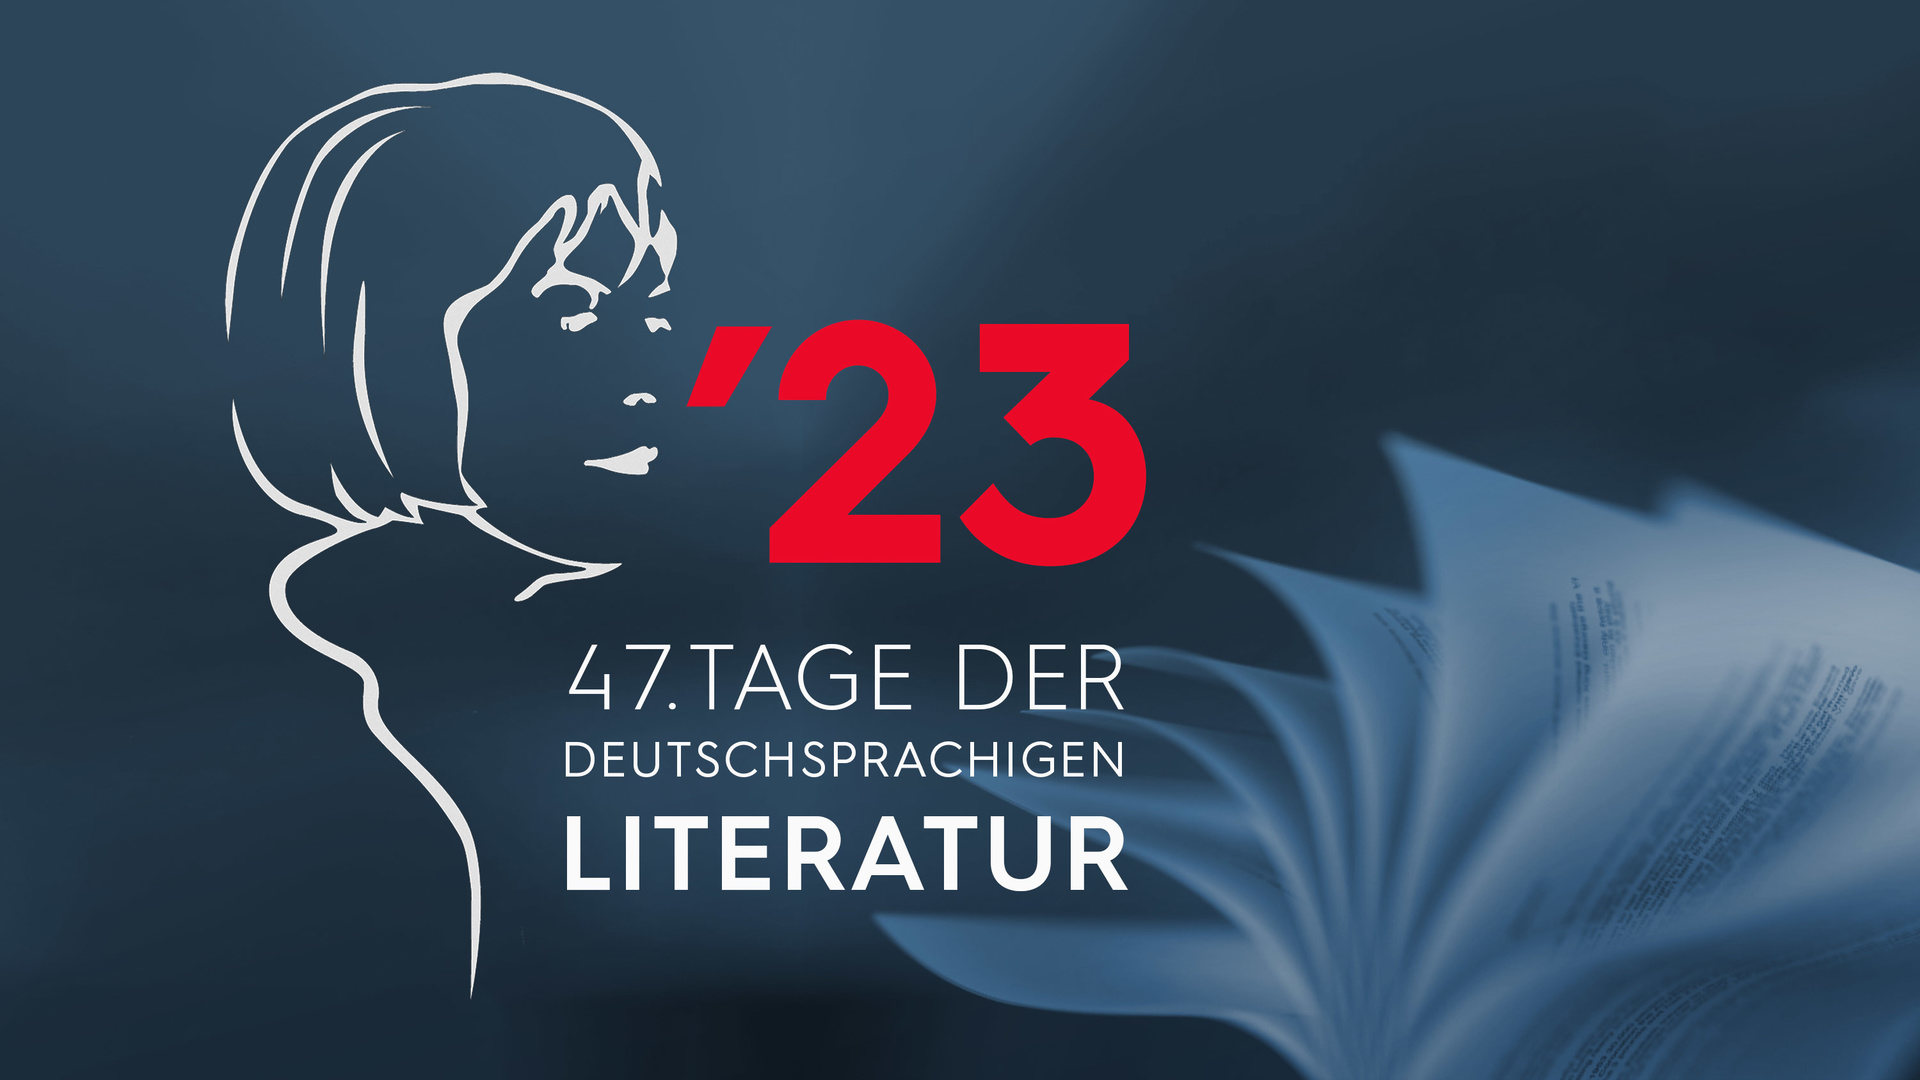 "47. Tage der deutschsprachigen Literatur": Logo mit Schriftzug 47. Tage der deutschsprachigen Literatur / Copyright: ZDF und ORF/TDDL